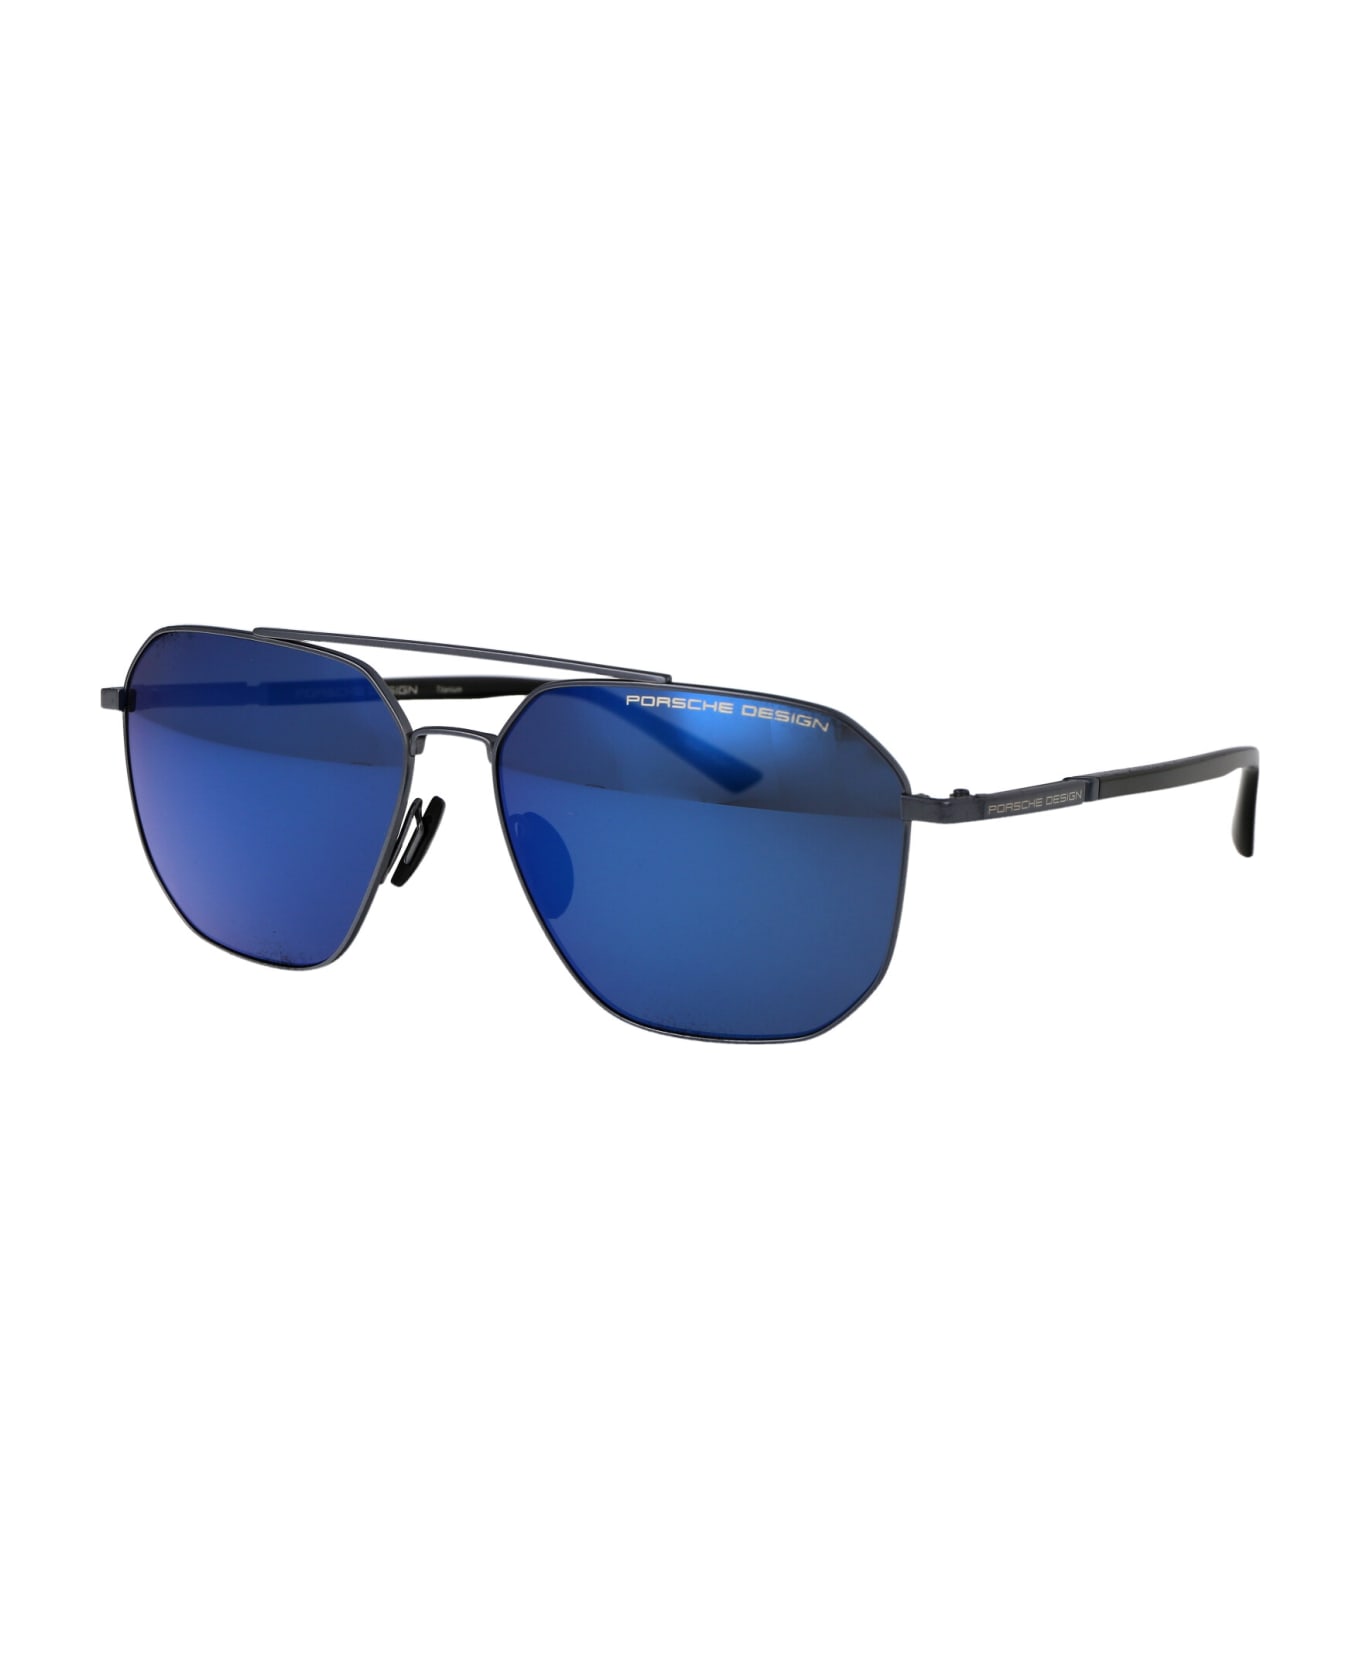 Porsche Design P8967 Sunglasses - D775 BLUE BLACK